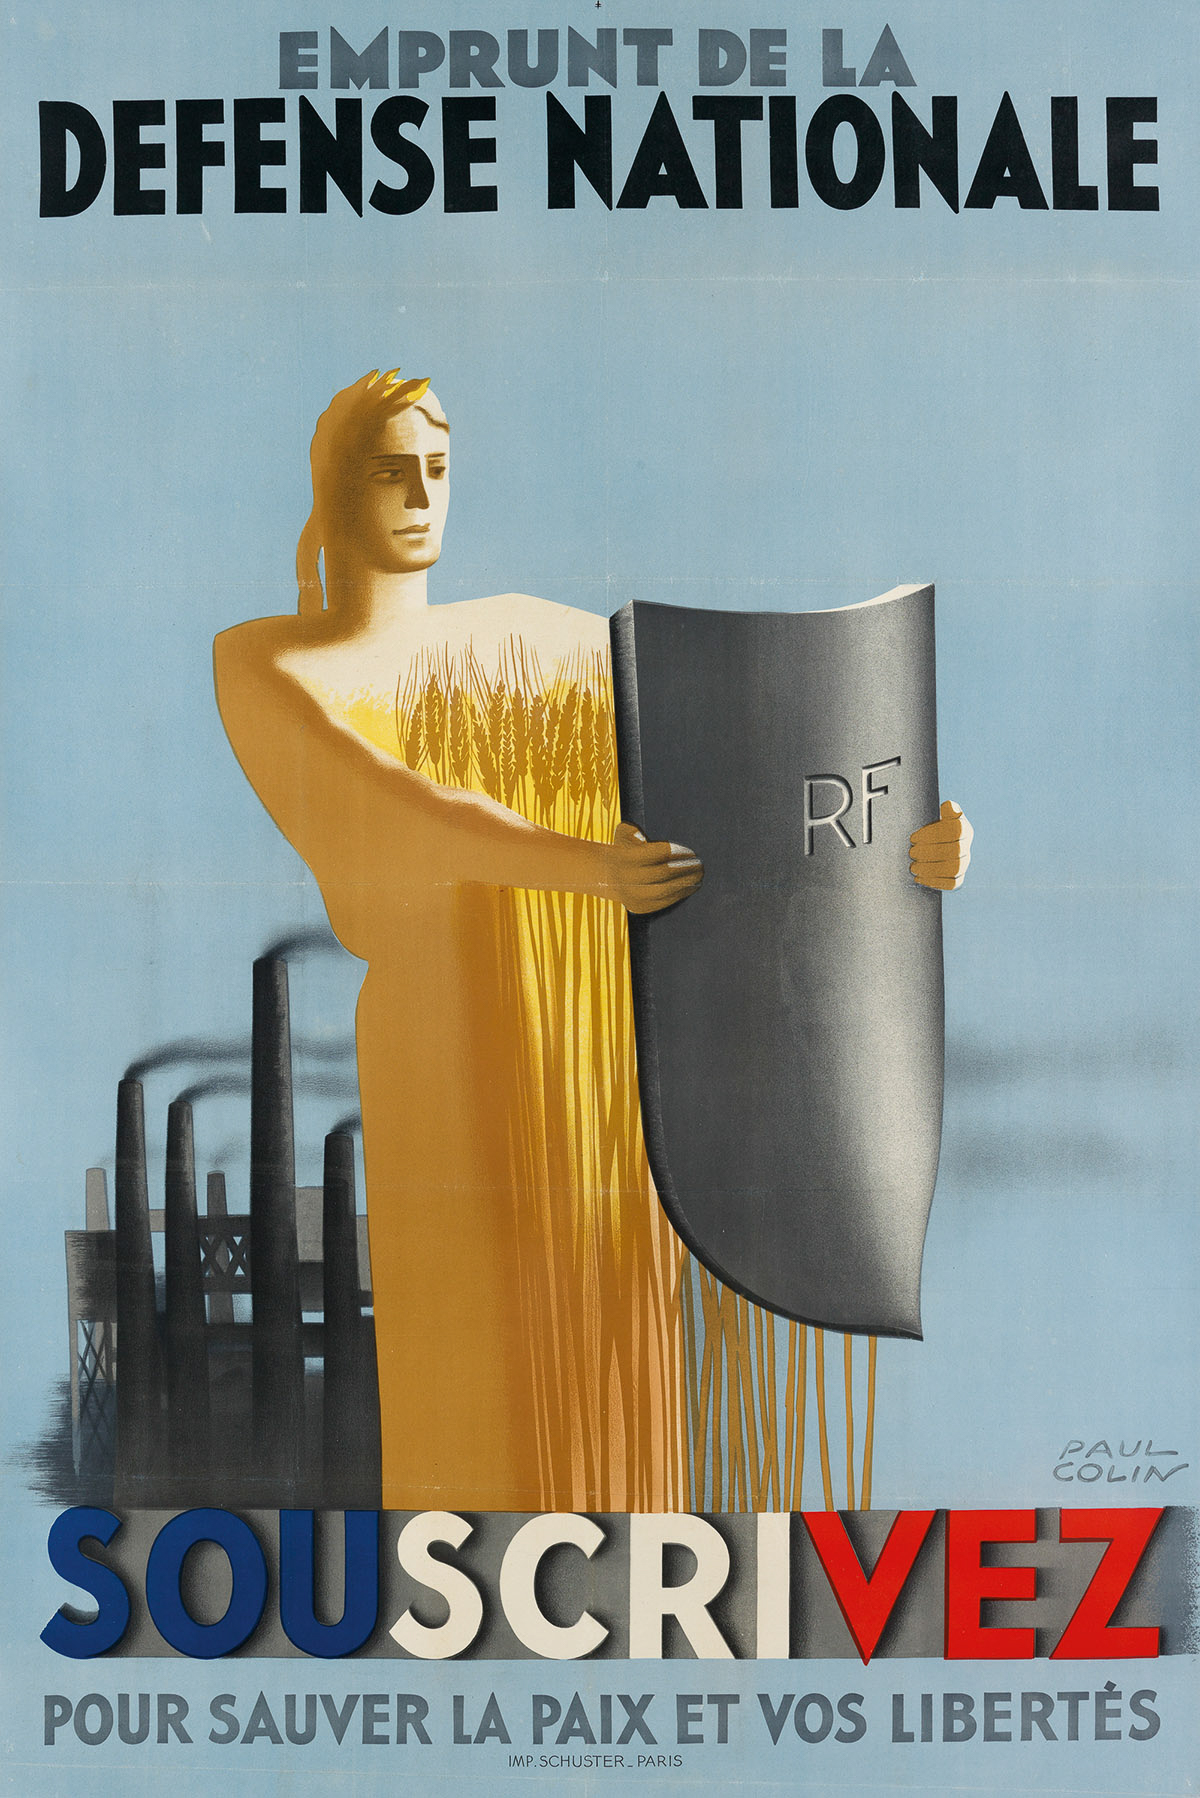 PAUL COLIN (1892-1986). EMPRUNT DE LA DEFENSE NATIONALE / SOUSCRIVEZ. Circa 1938. 46x30 inches, 116x77 cm. Schuster, Paris.